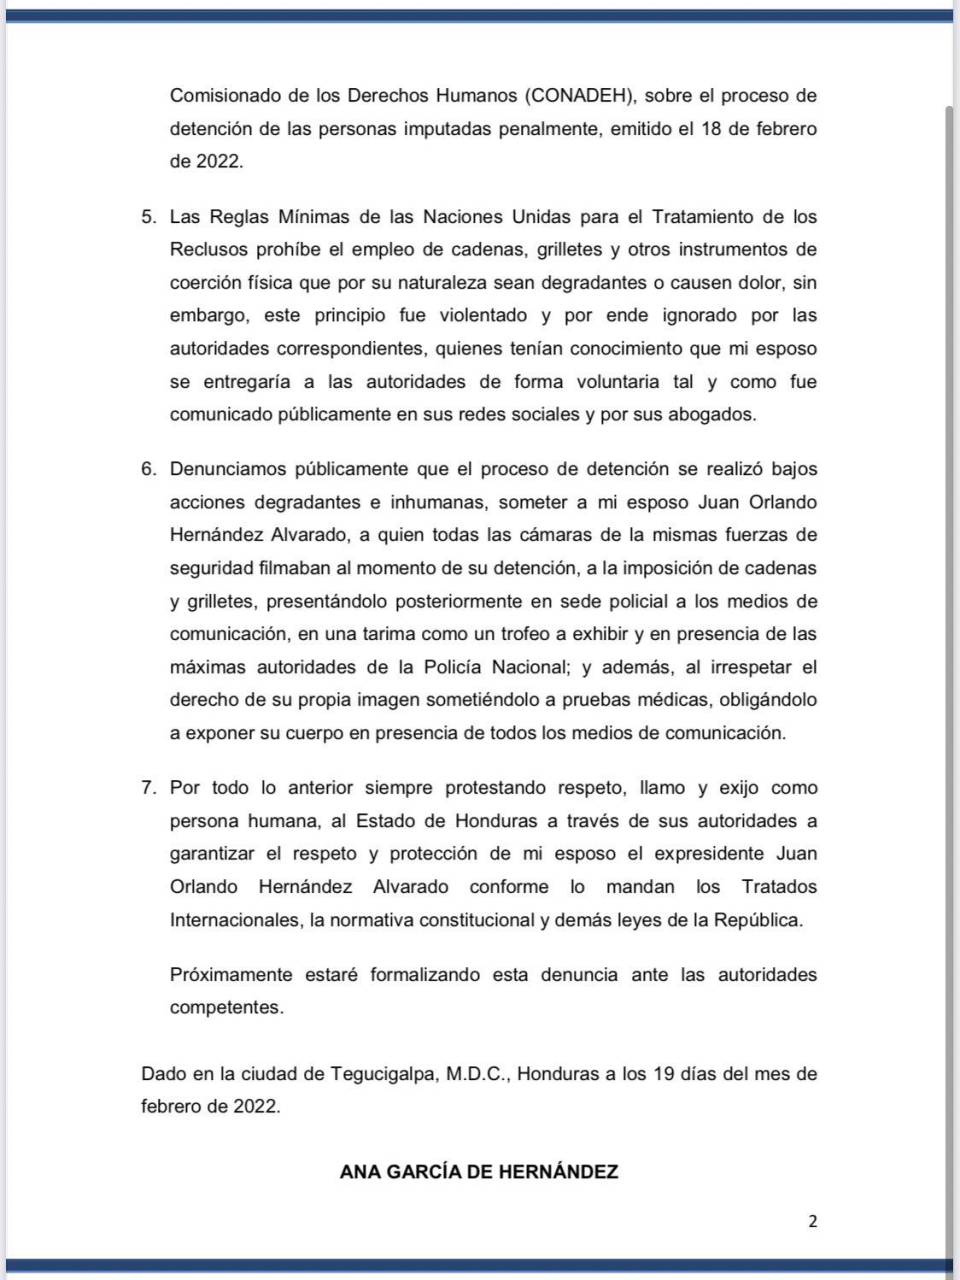 Con una carta pública, Ana García de Hernández denunció la violación de derechos que vivió su esposo, Juan Orlando Hernández.